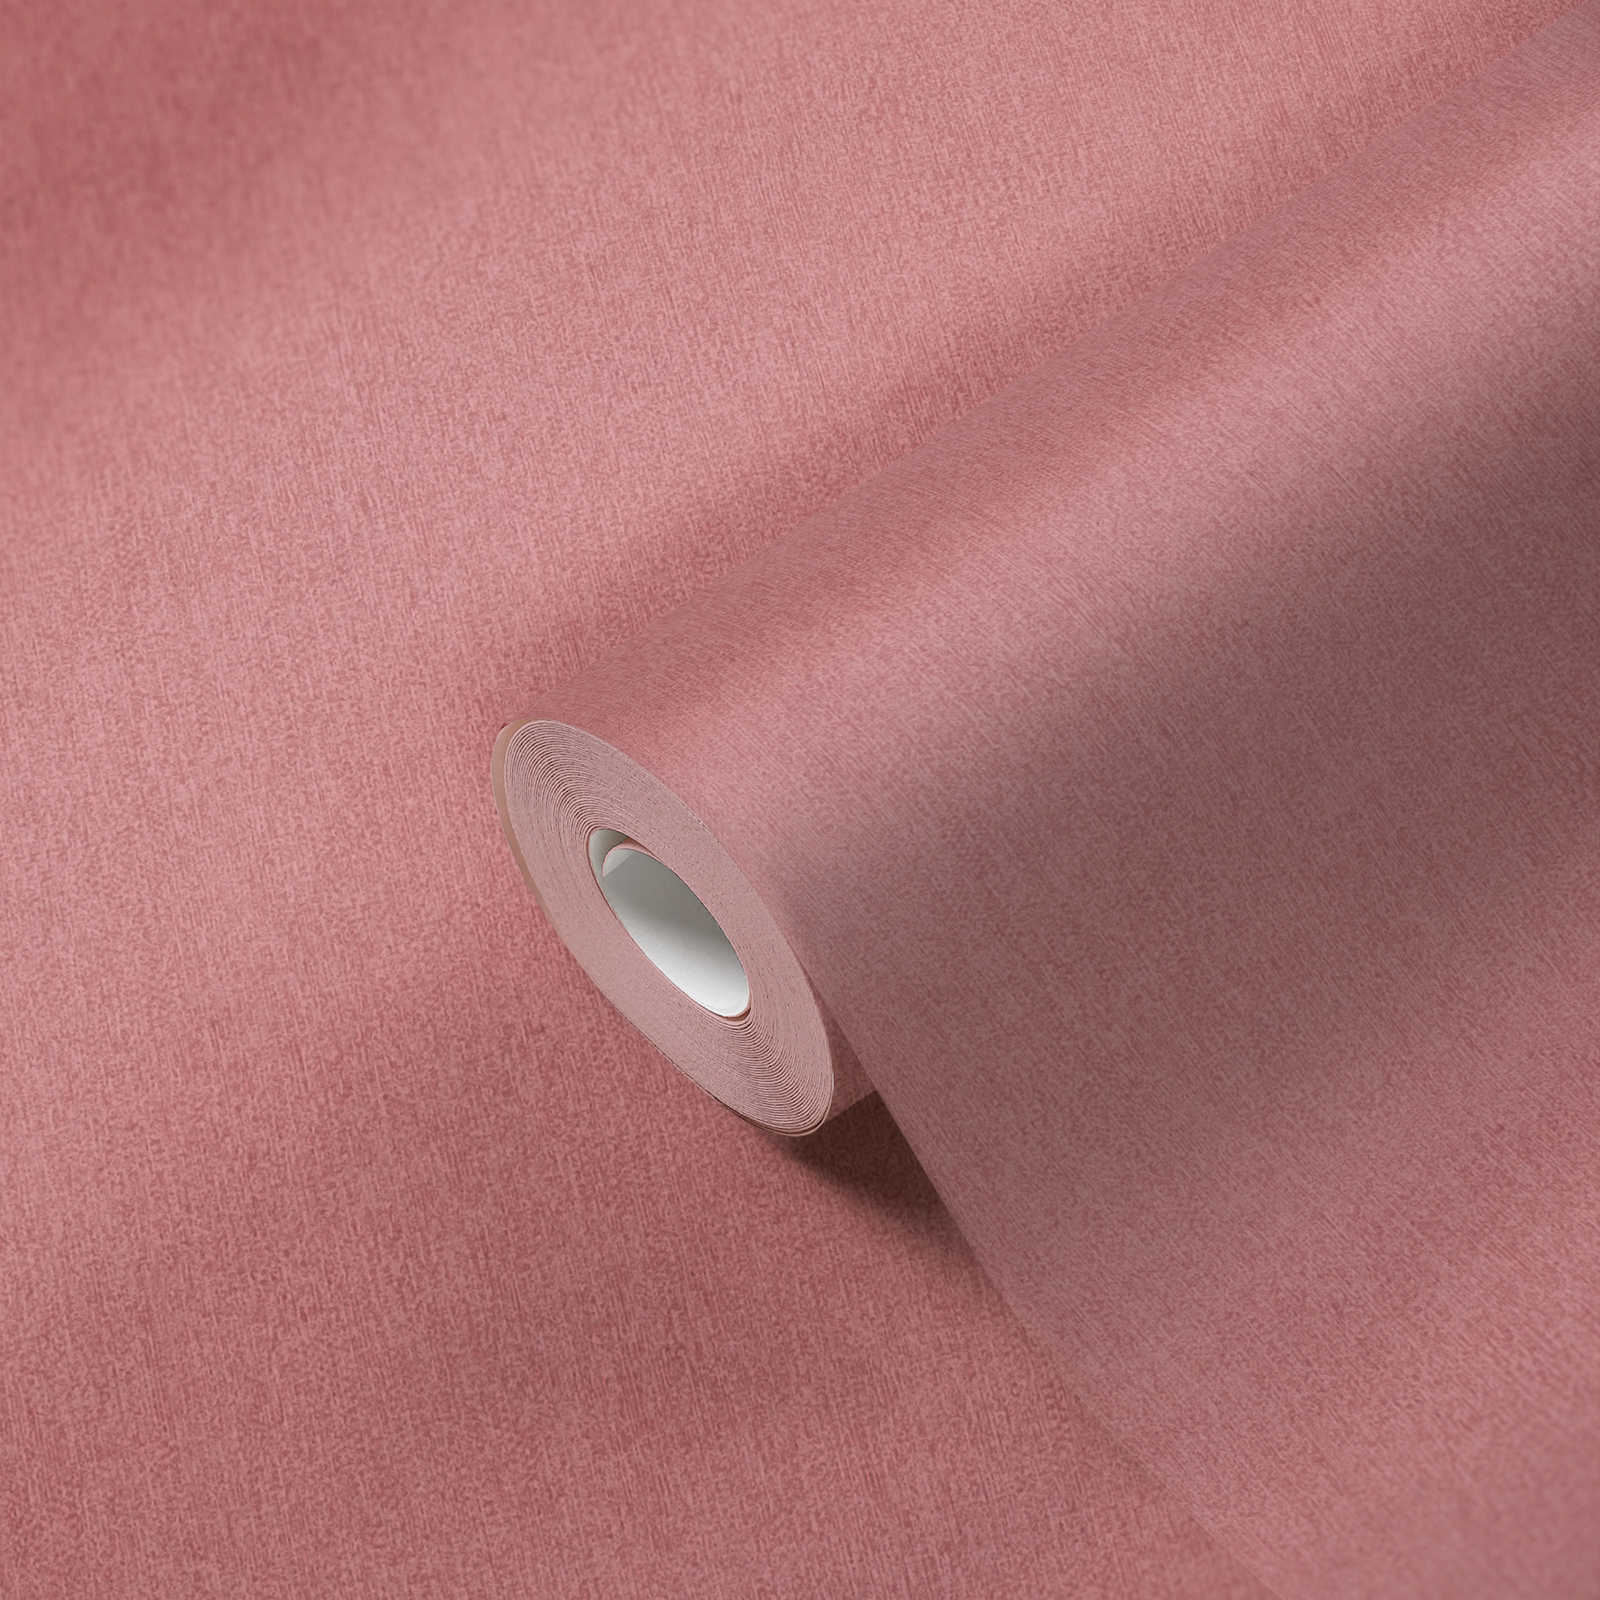             Non-woven wallpaper plain & matt with structure pattern - pink
        